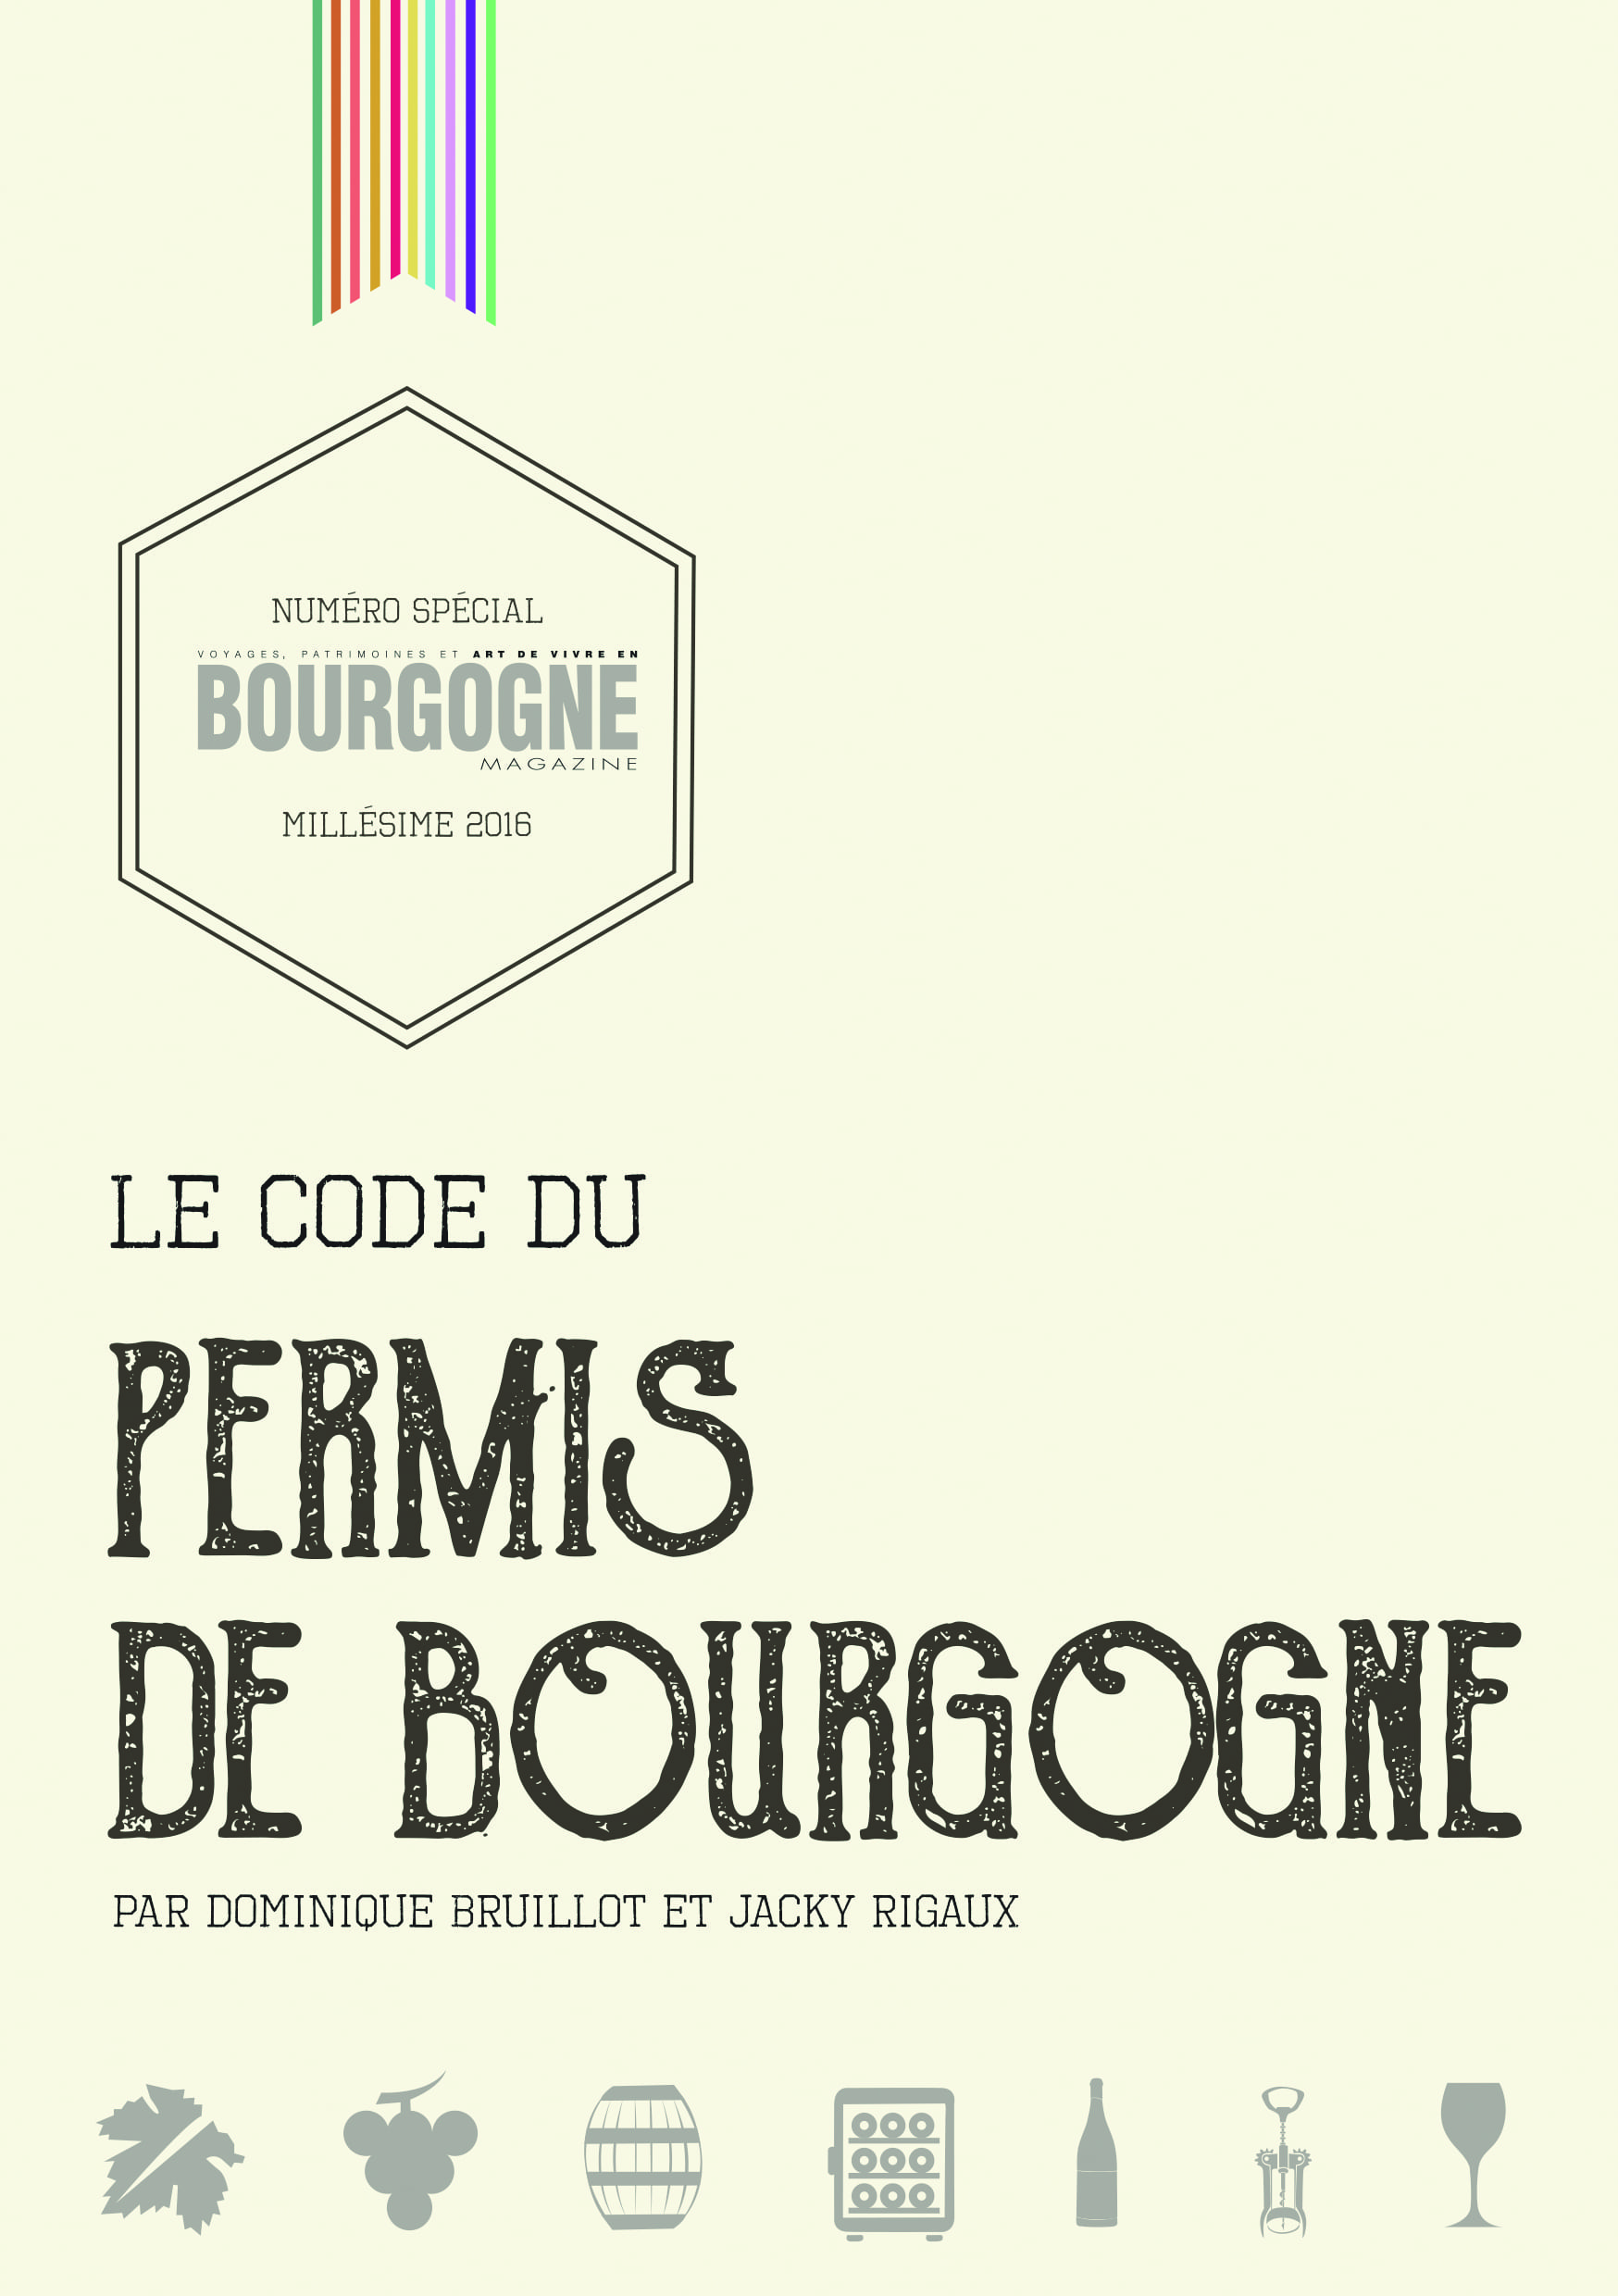 Le Code du Permis de Bourgogne, mode d’emploi